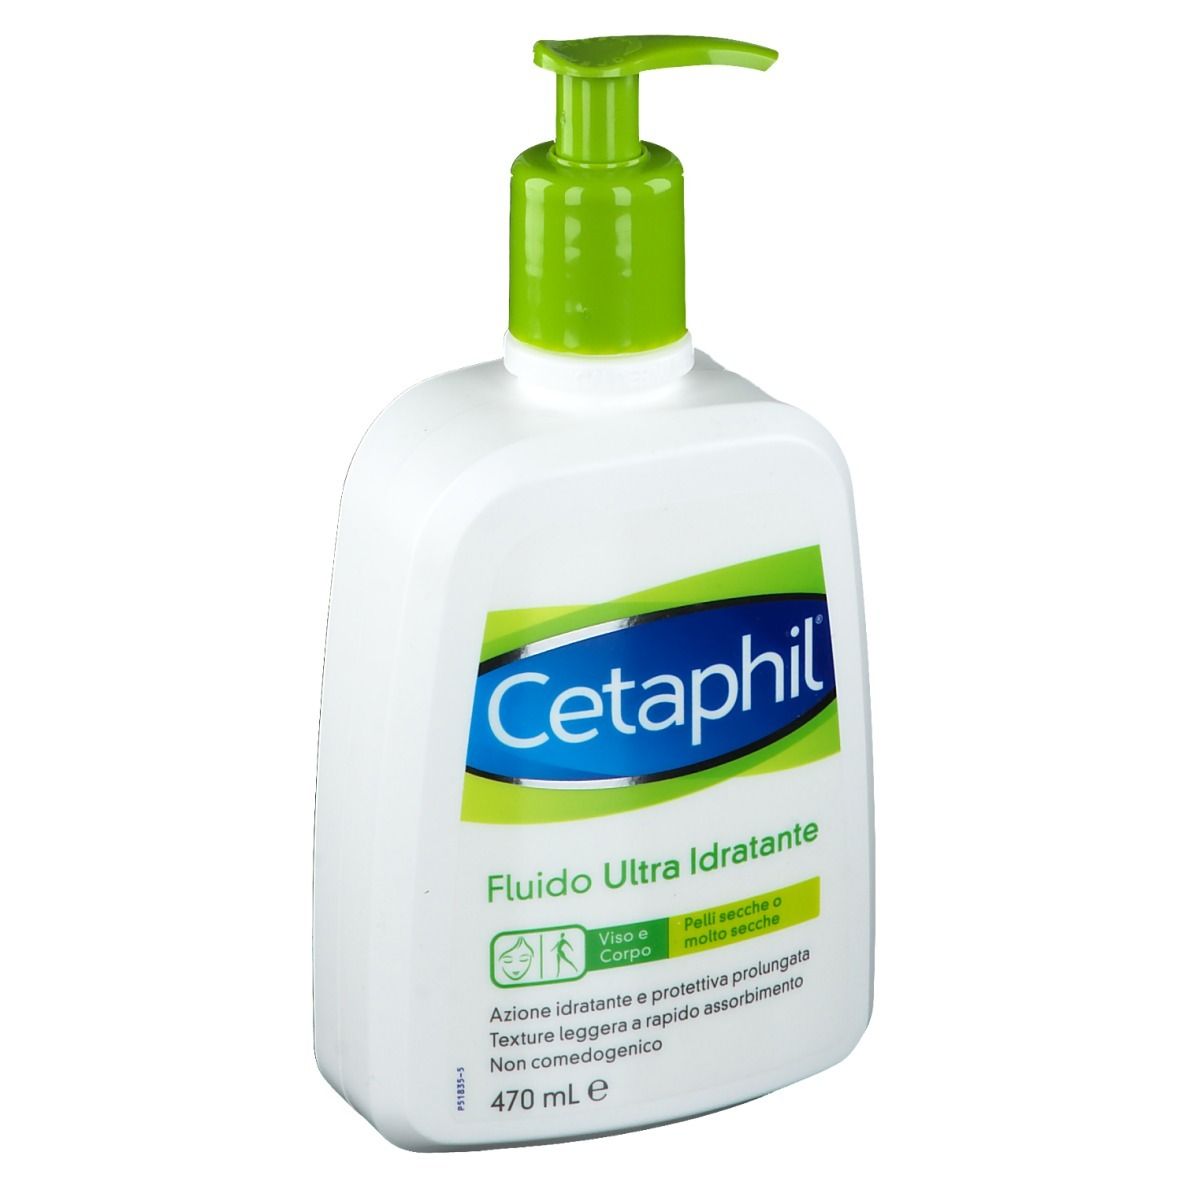 Cetaphil® Fluido Ultra Idratante